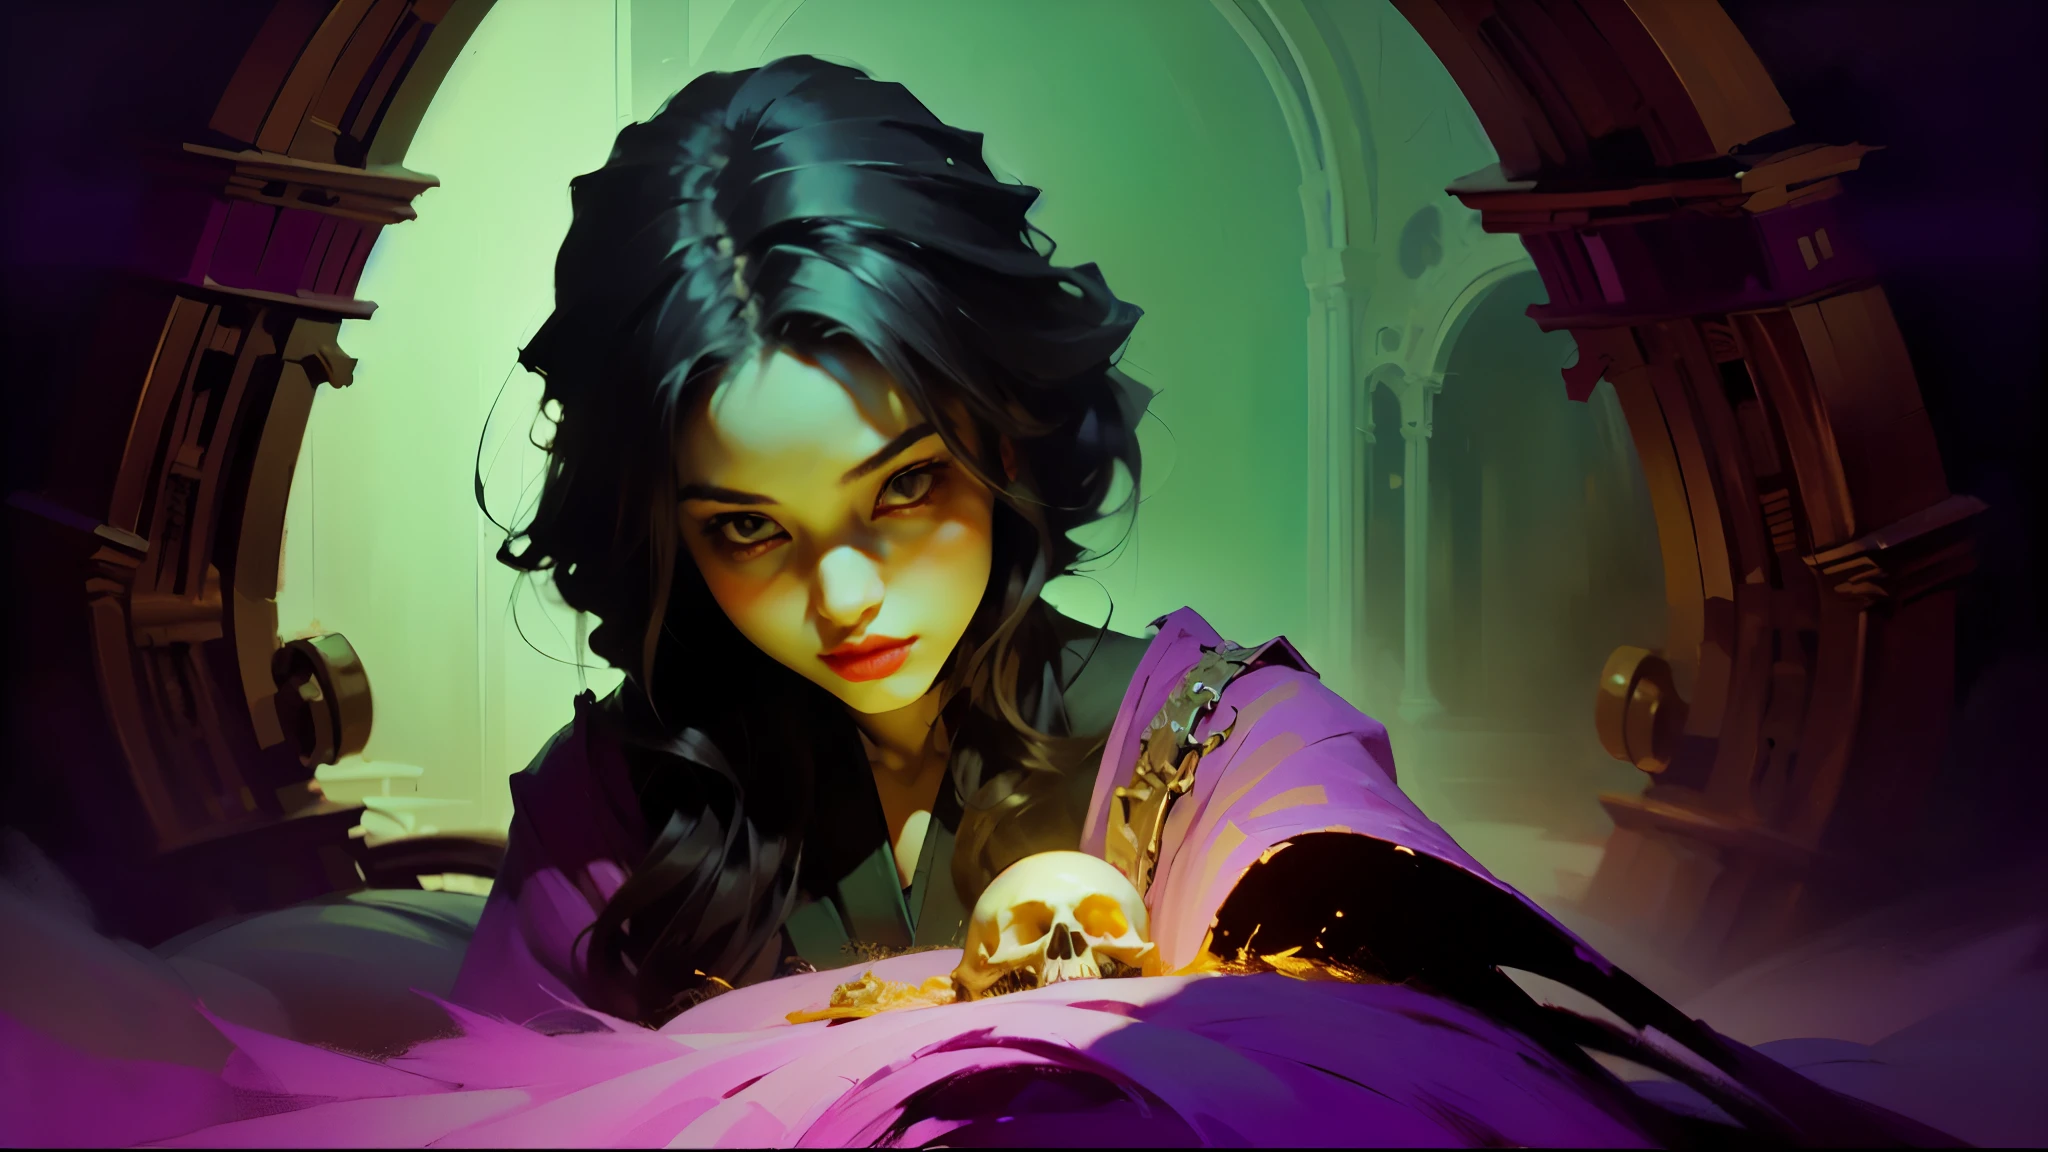 在这幅令人着迷的油画中, 紫红色调的淡紫色空灵旋转的空灵能量在黑暗的数字笔触中凸显出一位神秘的女性巫师. 图片, 呈现令人惊叹的清晰度和复杂的细节, 展示了死灵法师被她捕获的灵魂精华所包围，在即将消逝的光之余烬中试图逃离她的存在 .( 亡灵法师的琥珀色和青色长袍, 装饰有复杂的图案和闪闪发光的符文, 唤起一种神秘力量的感觉). 有着一双锐利的紫色眼睛，似乎能看透人的灵魂深处, ((死灵法师苍白无瑕的肤色和金发与一丝诡异的冷光形成鲜明对比)). 这幅精湛的艺术作品捕捉了通灵术的神秘感和魅力, 带领观众进入一个魔法与黑暗交织的世界.